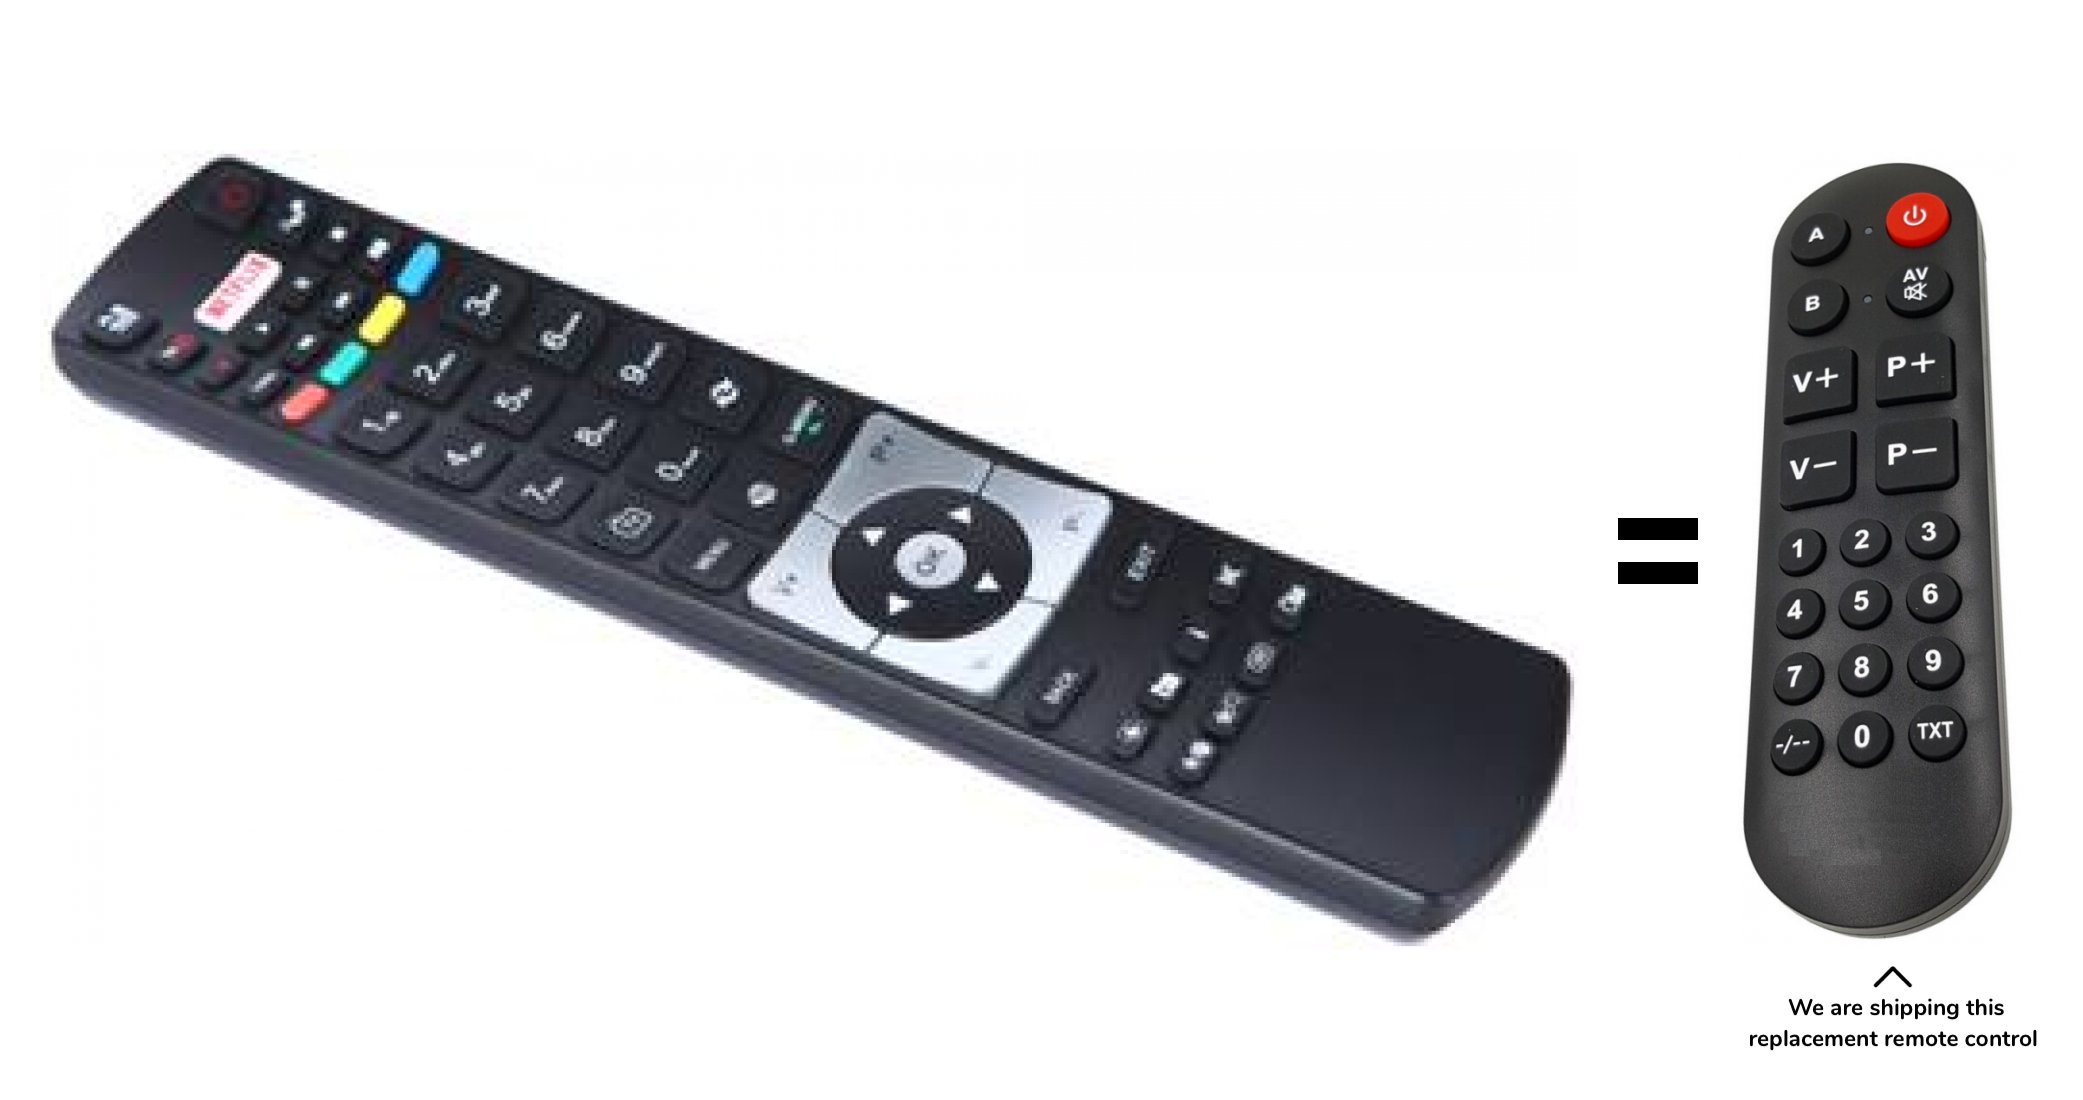 Finlux TVF49FUC8160, TVF43FUC8160 remote control for seniors